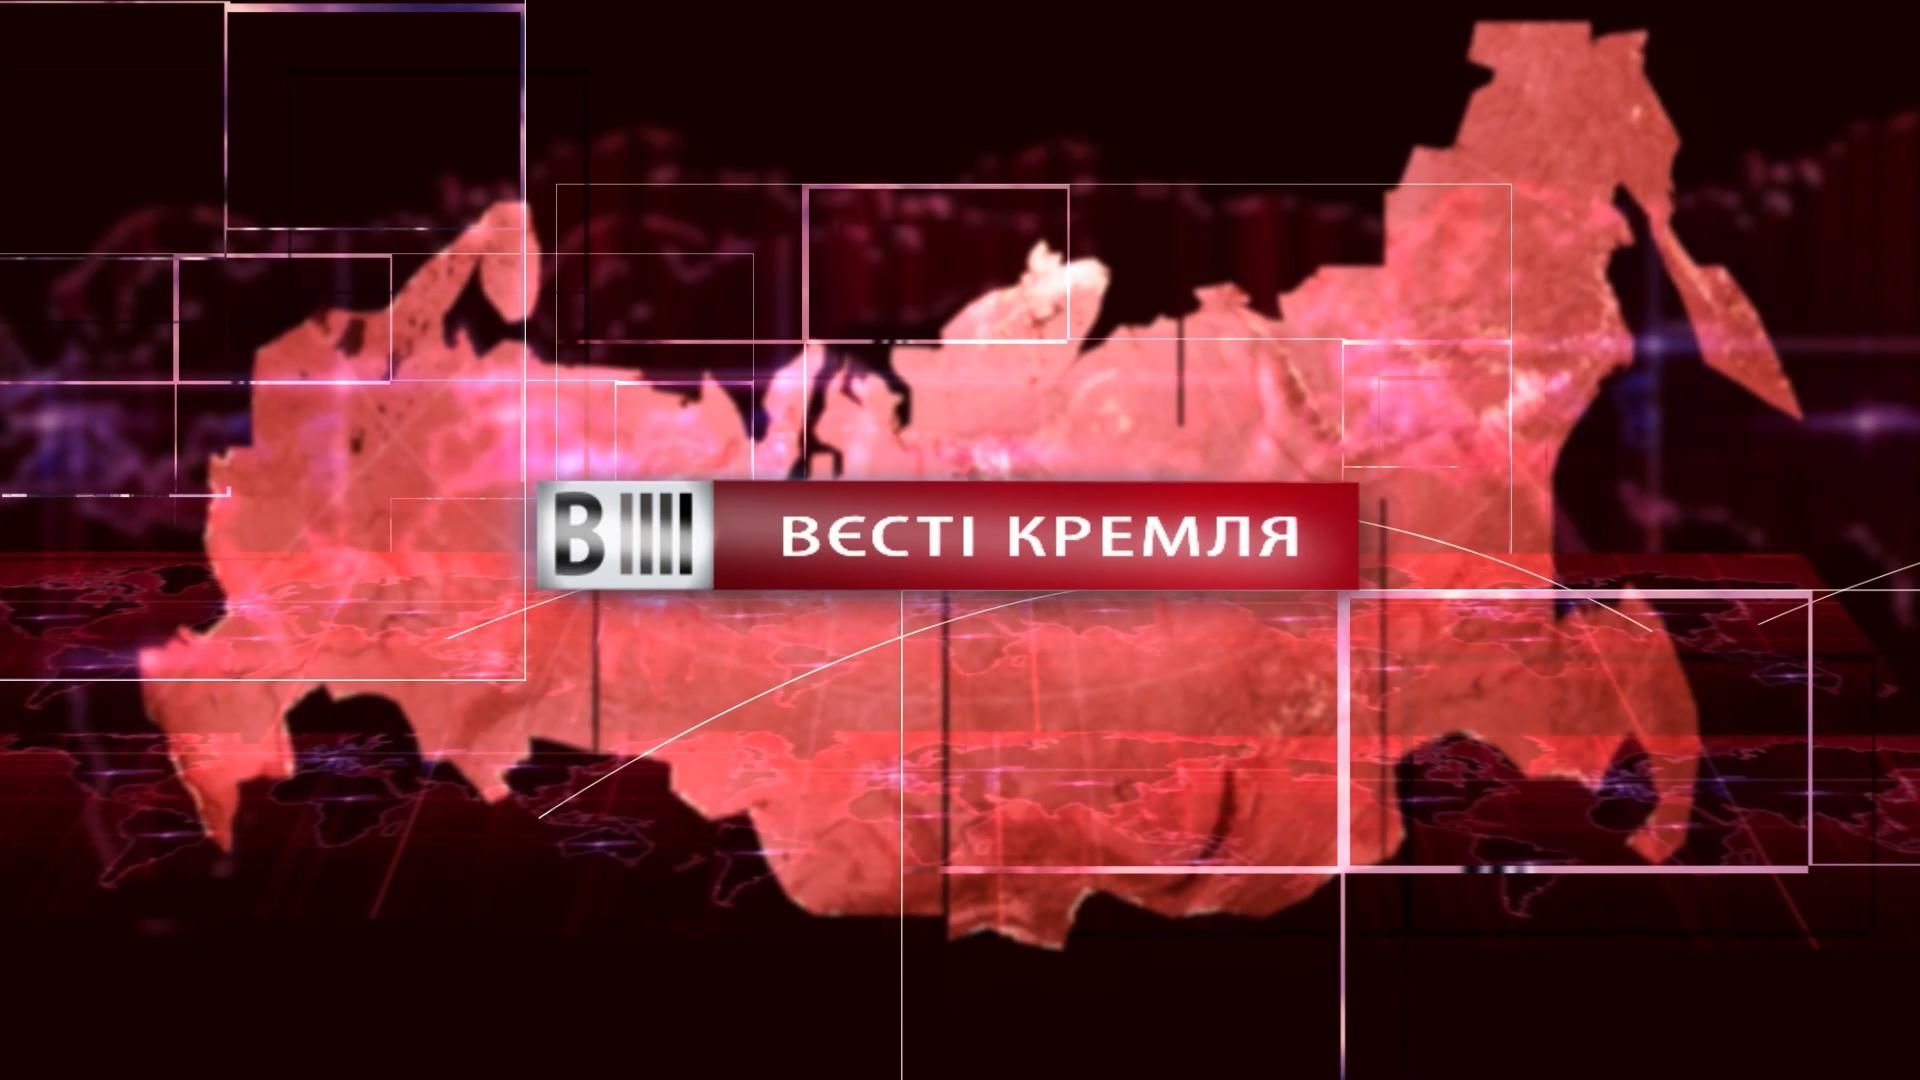 Смотрите "Вести Кремля". Жириновский доплавался до новой должности. Сколько осталось Путину